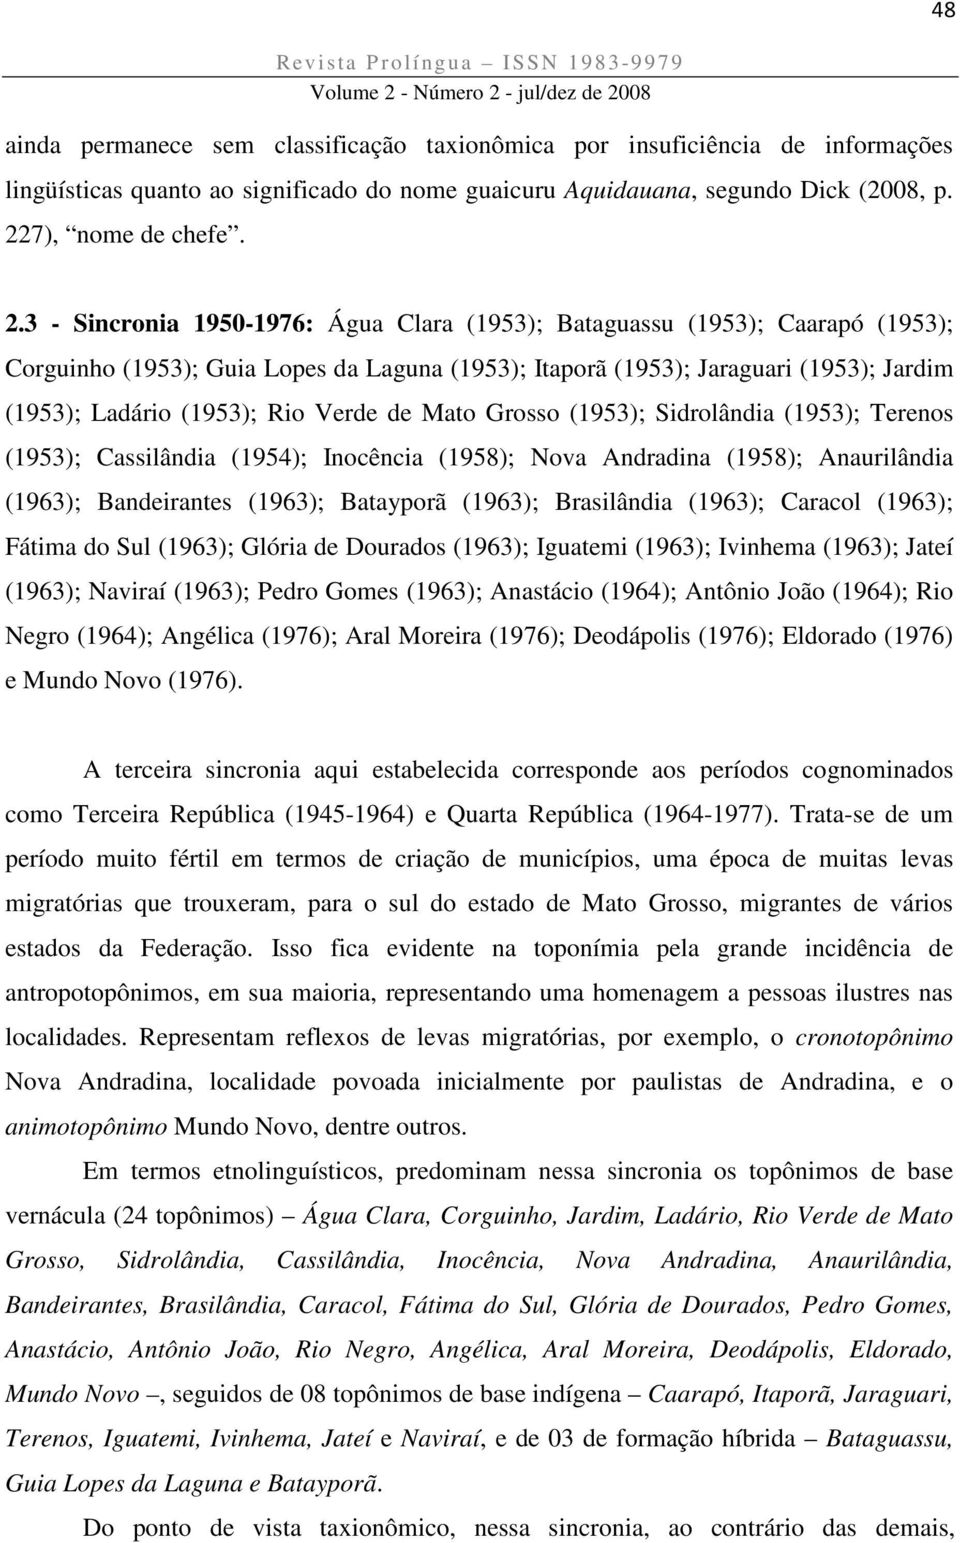 3 - Sincronia 1950-1976: Água Clara (1953); Bataguassu (1953); Caarapó (1953); Corguinho (1953); Guia Lopes da Laguna (1953); Itaporã (1953); Jaraguari (1953); Jardim (1953); Ladário (1953); Rio